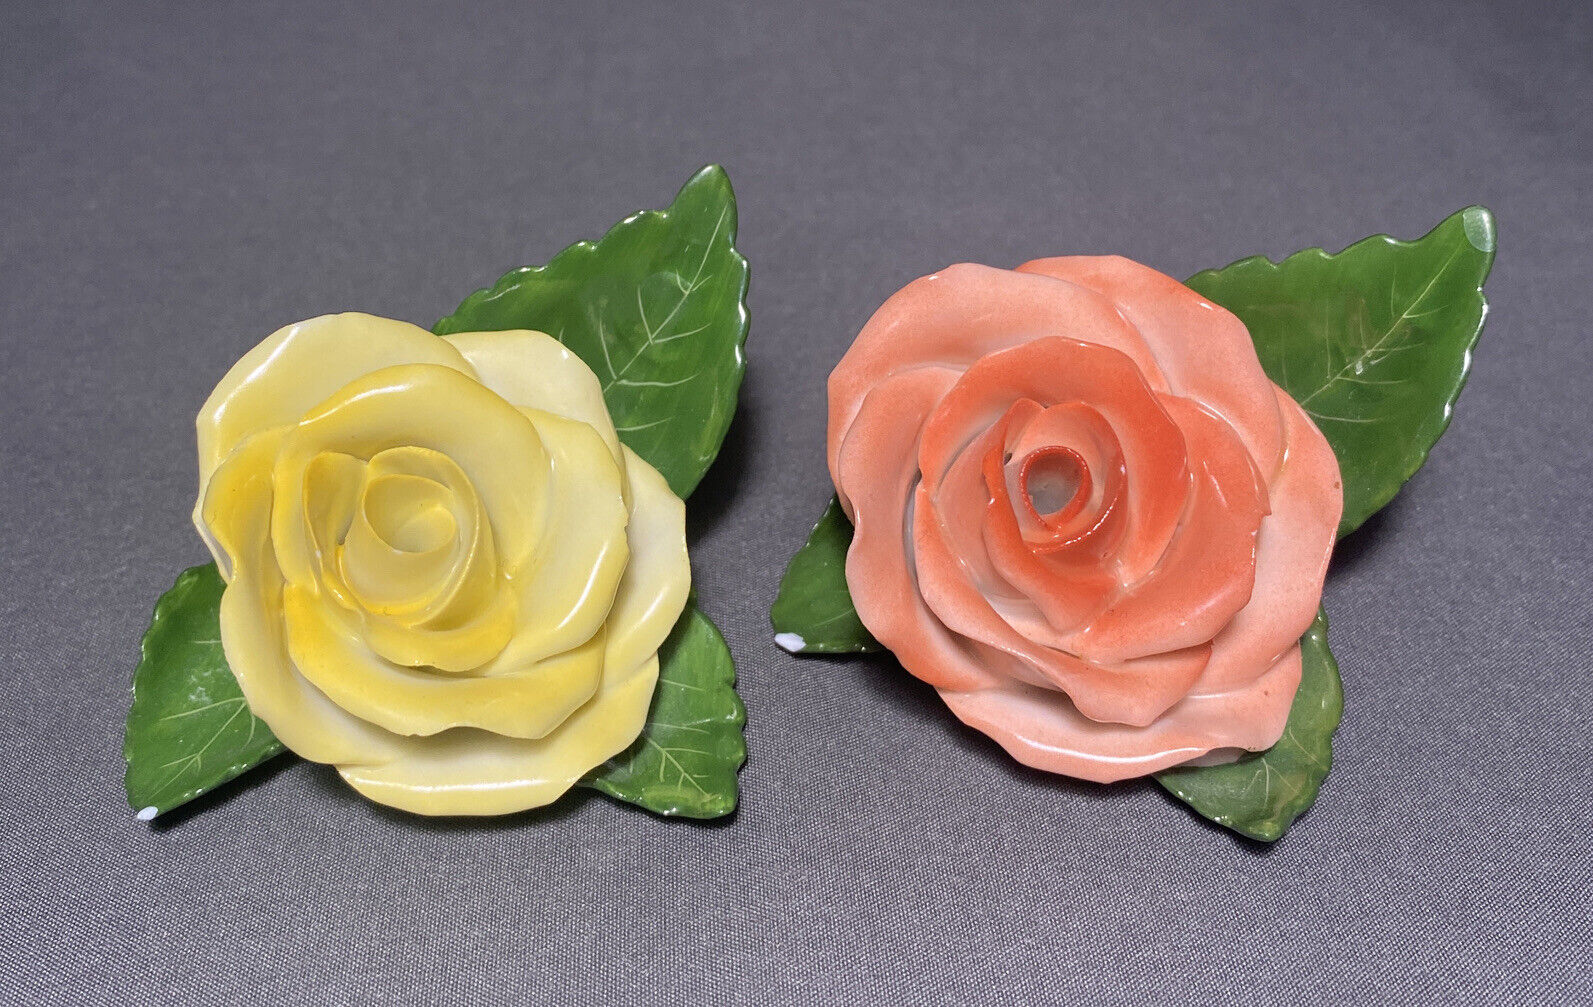 x2 Herend Rose Bud Flower Porcelain Figurine 9106 9105 Place Card Holder Chip